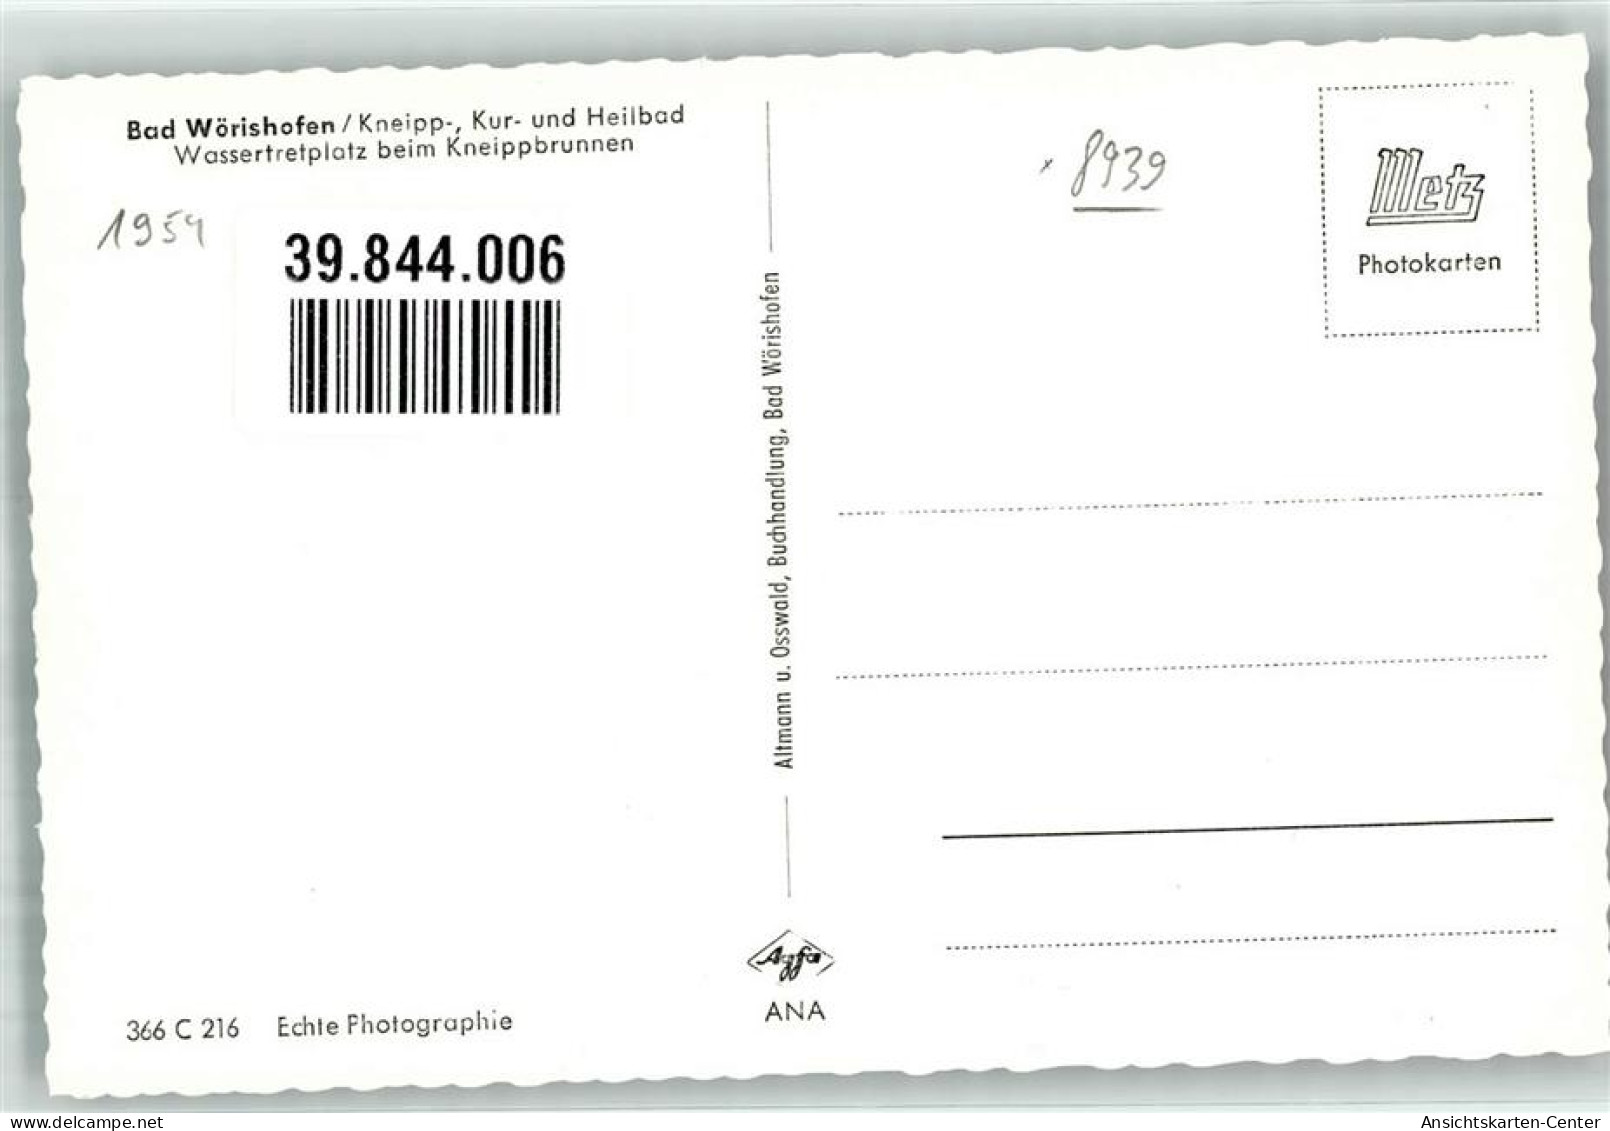 39844006 - Bad Woerishofen - Bad Woerishofen